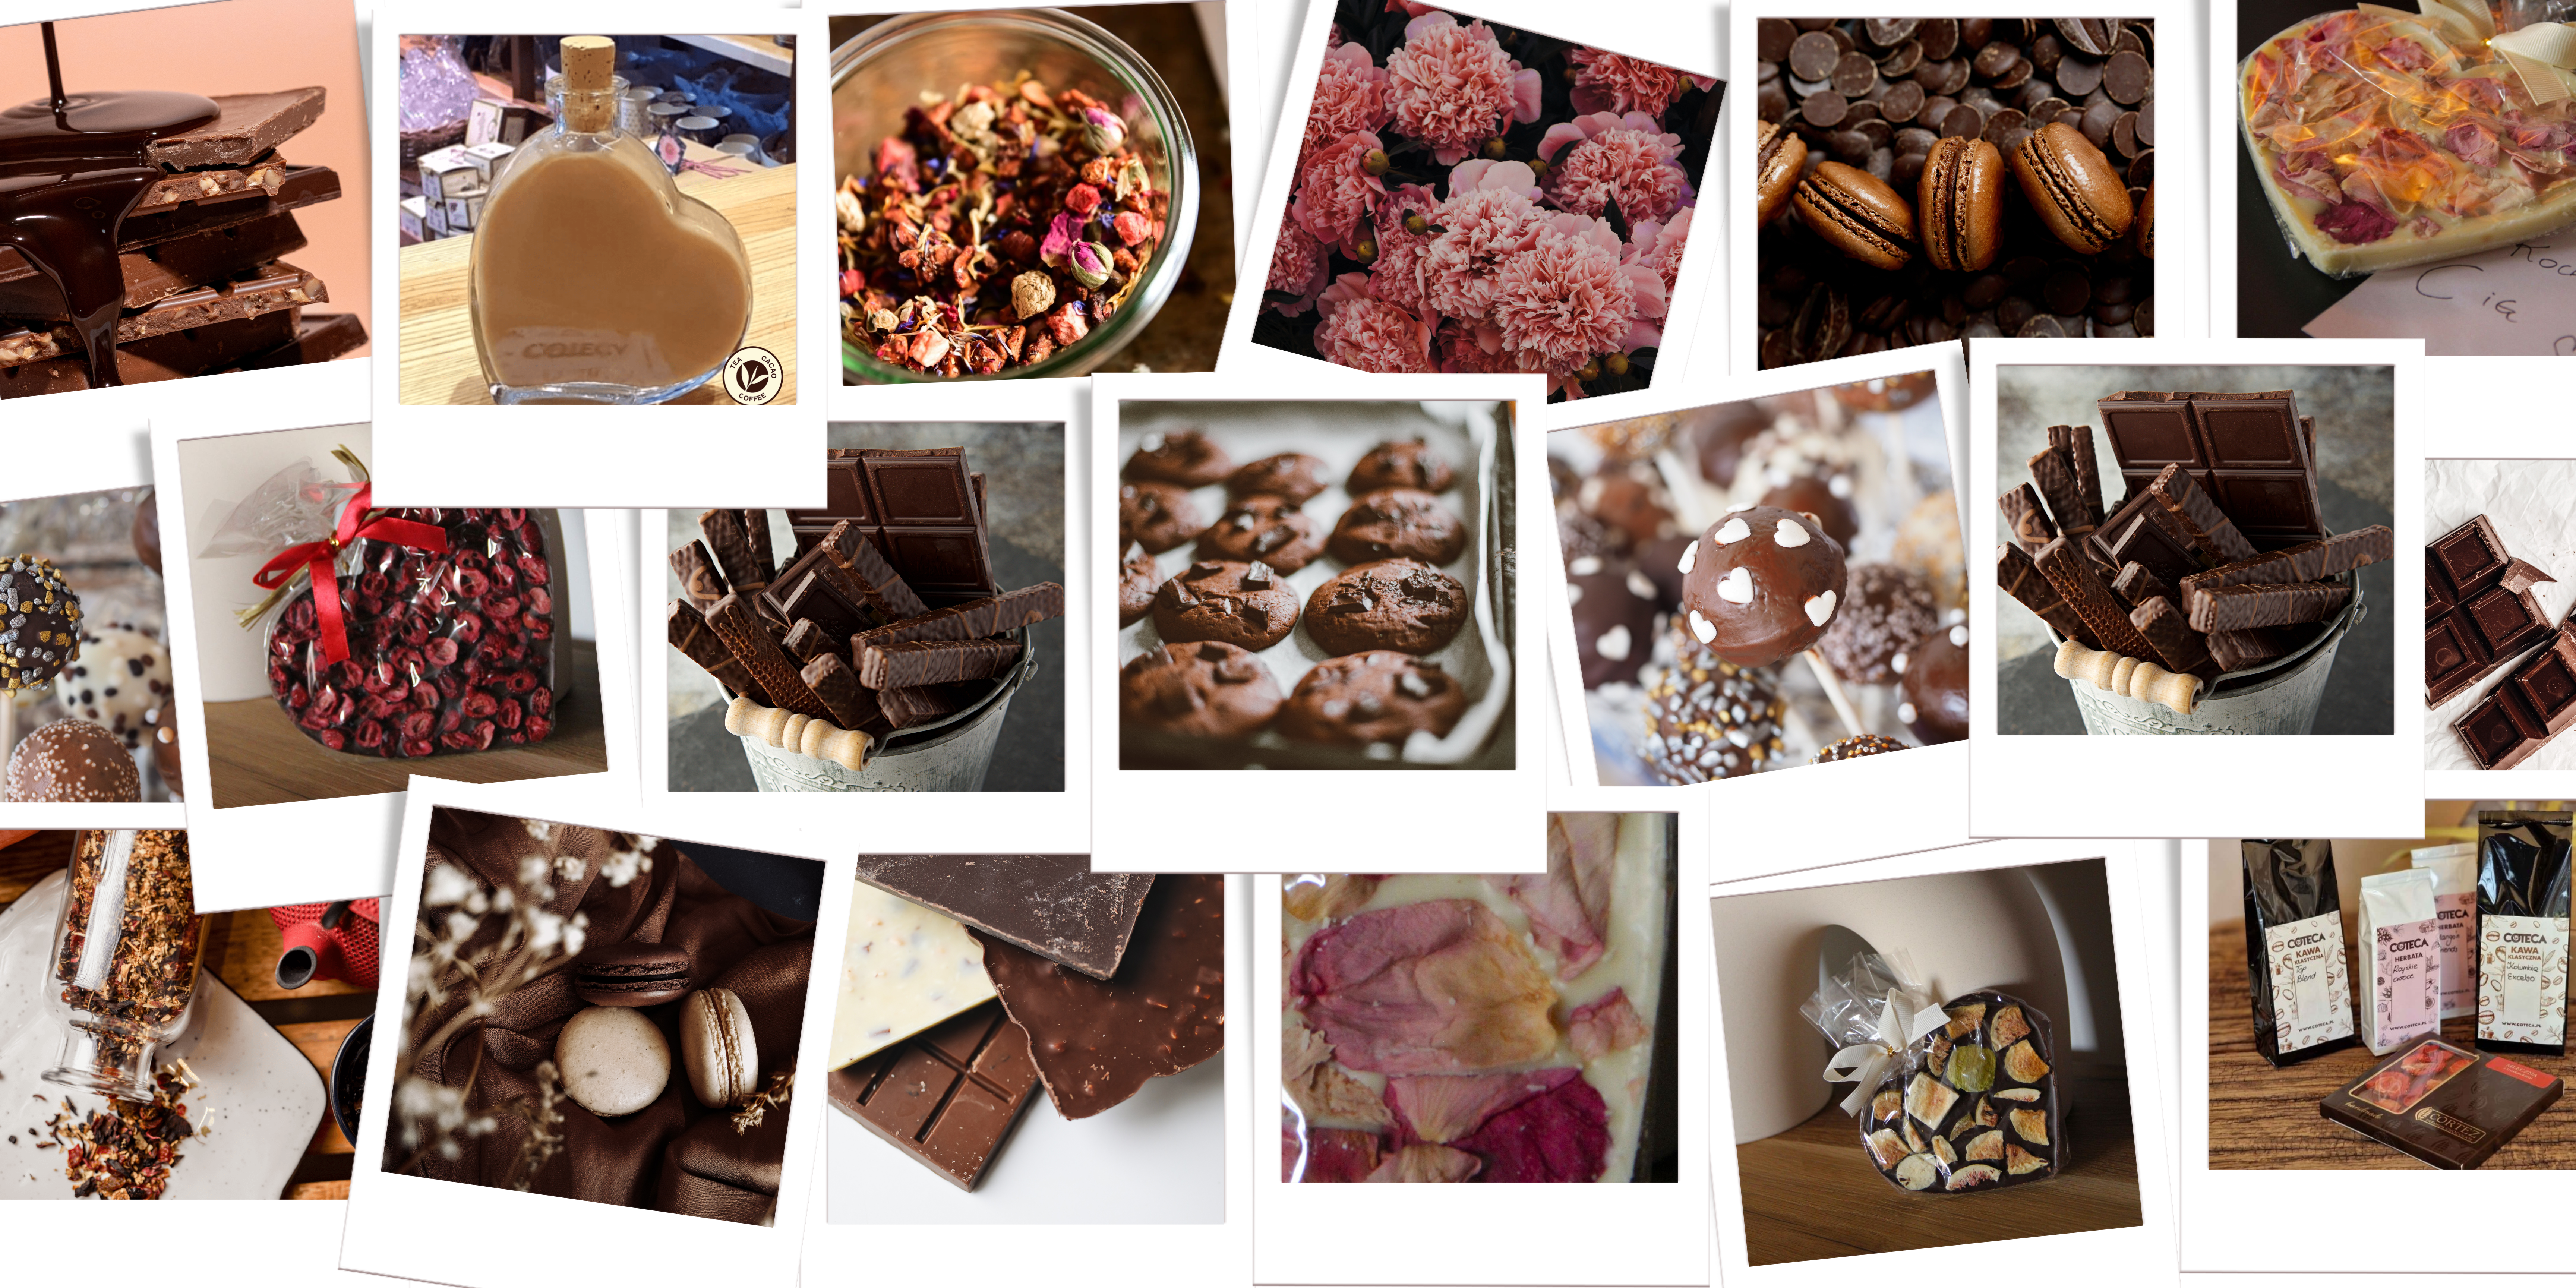 polskie słodycze, czekolady - smaczne, lokalne propozycje na małe przyjemności